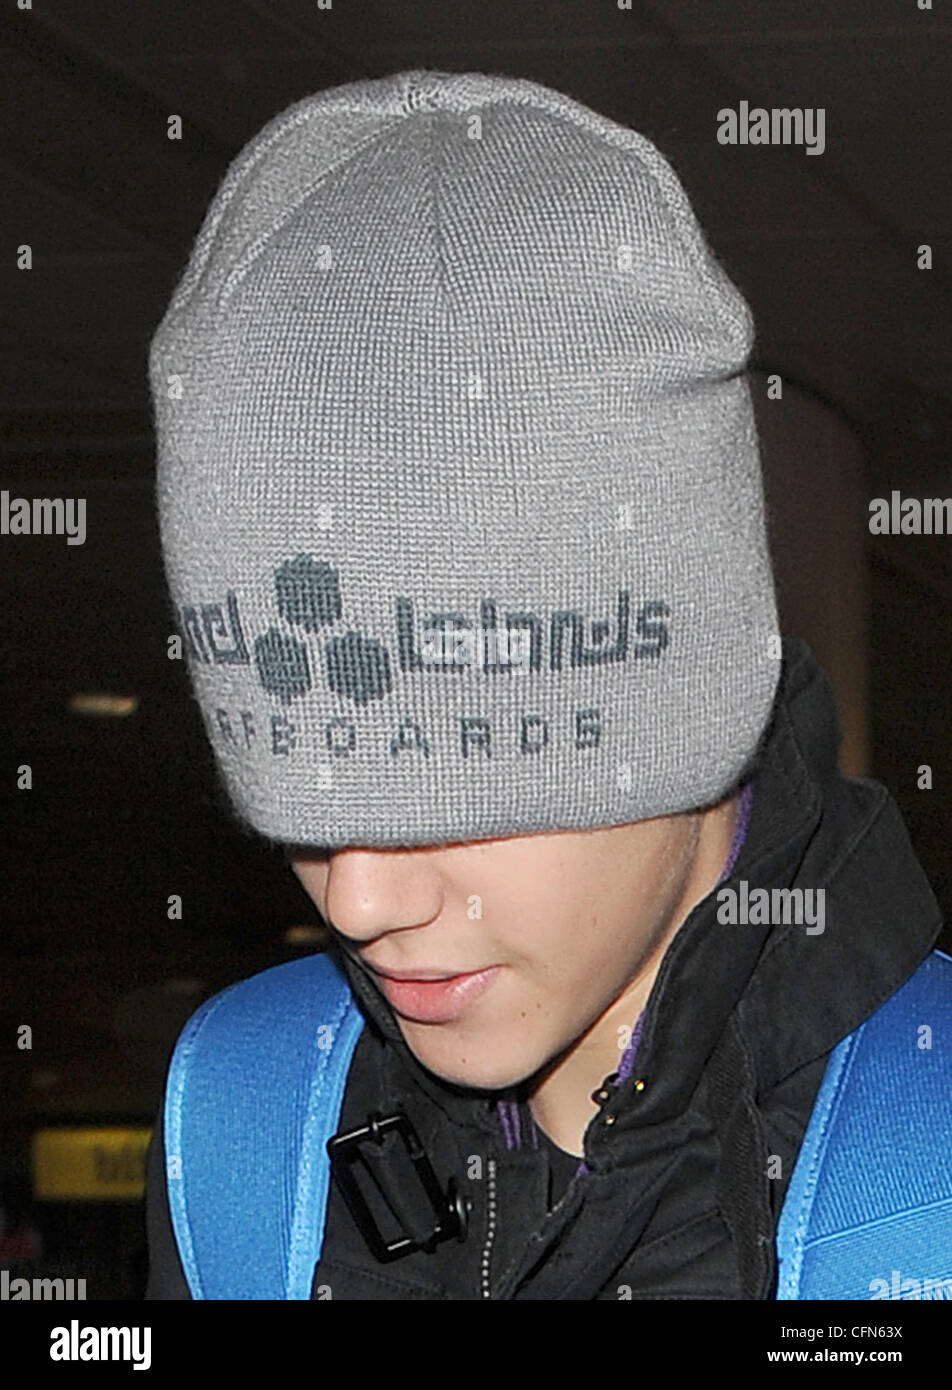 Justin Bieber à gauche des dizaines d'adolescentes déçu qu'il est arrivé  dans l'aéroport d'Heathrow sans message d'eux. Bieber a sorti son chapeau  bonnet gris sur la tête - obstruction à sa vision -